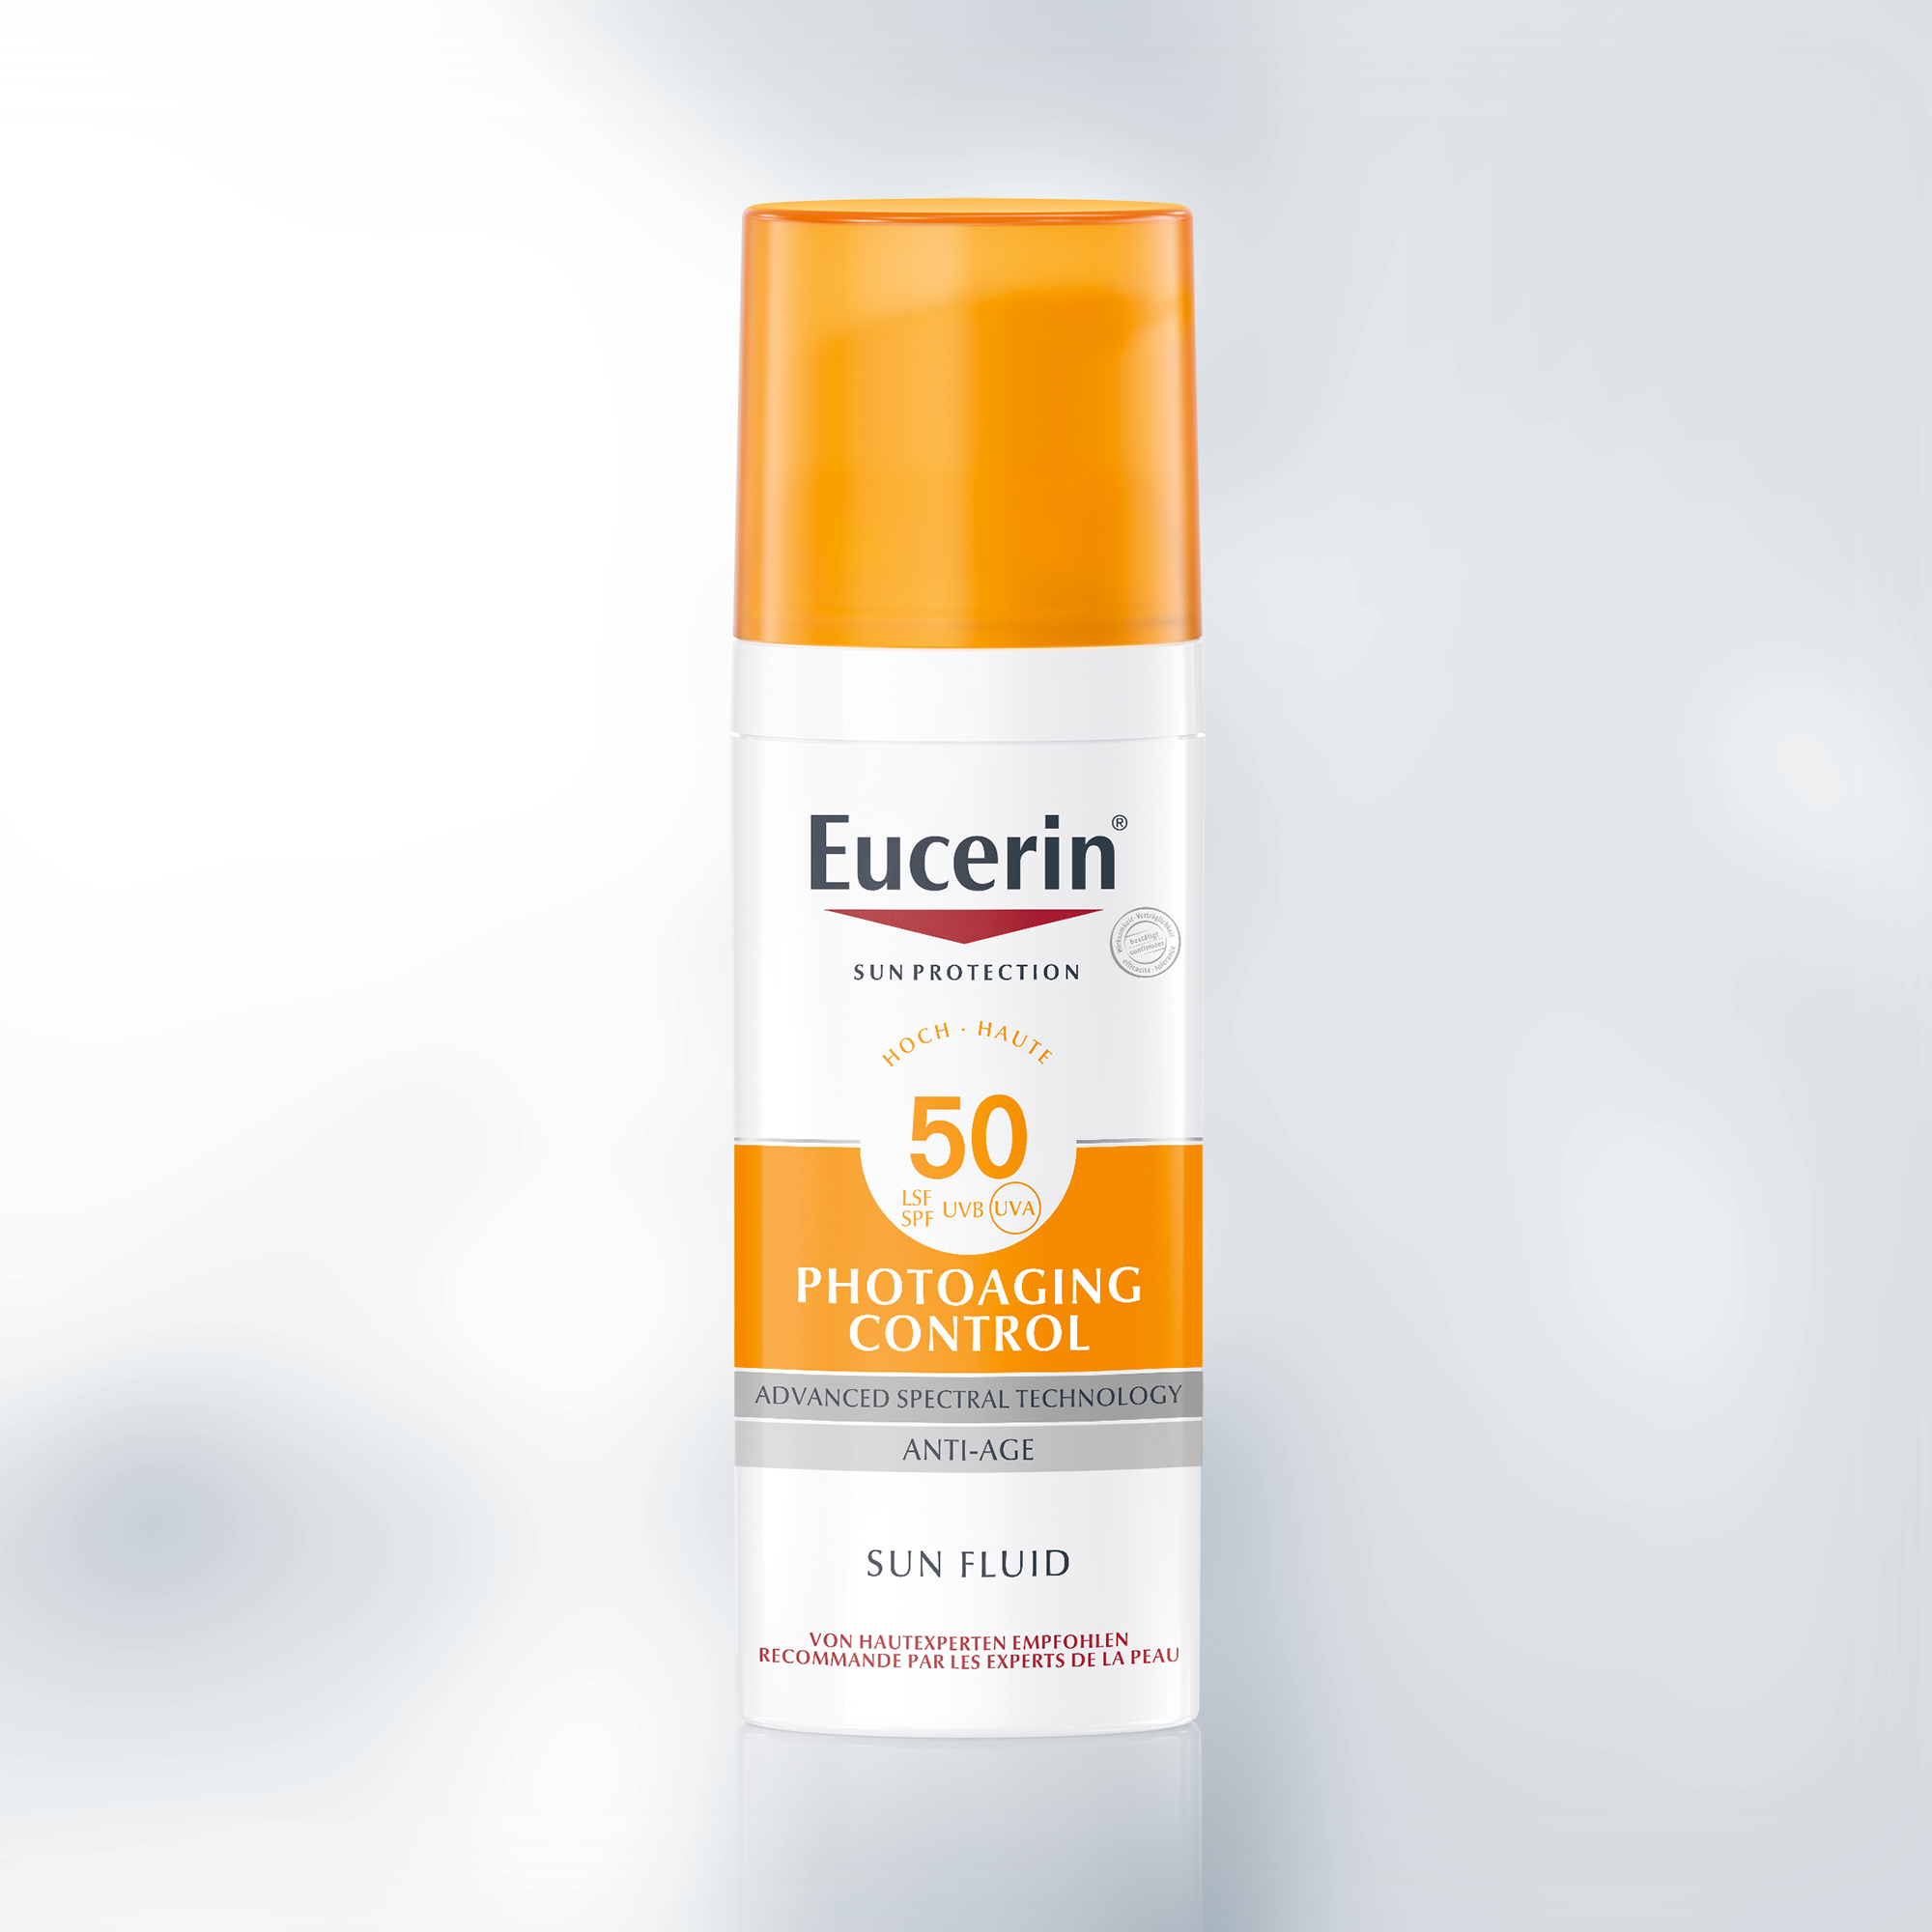 Eucerin Photoaging Control Face Sun Fluid SPF 50